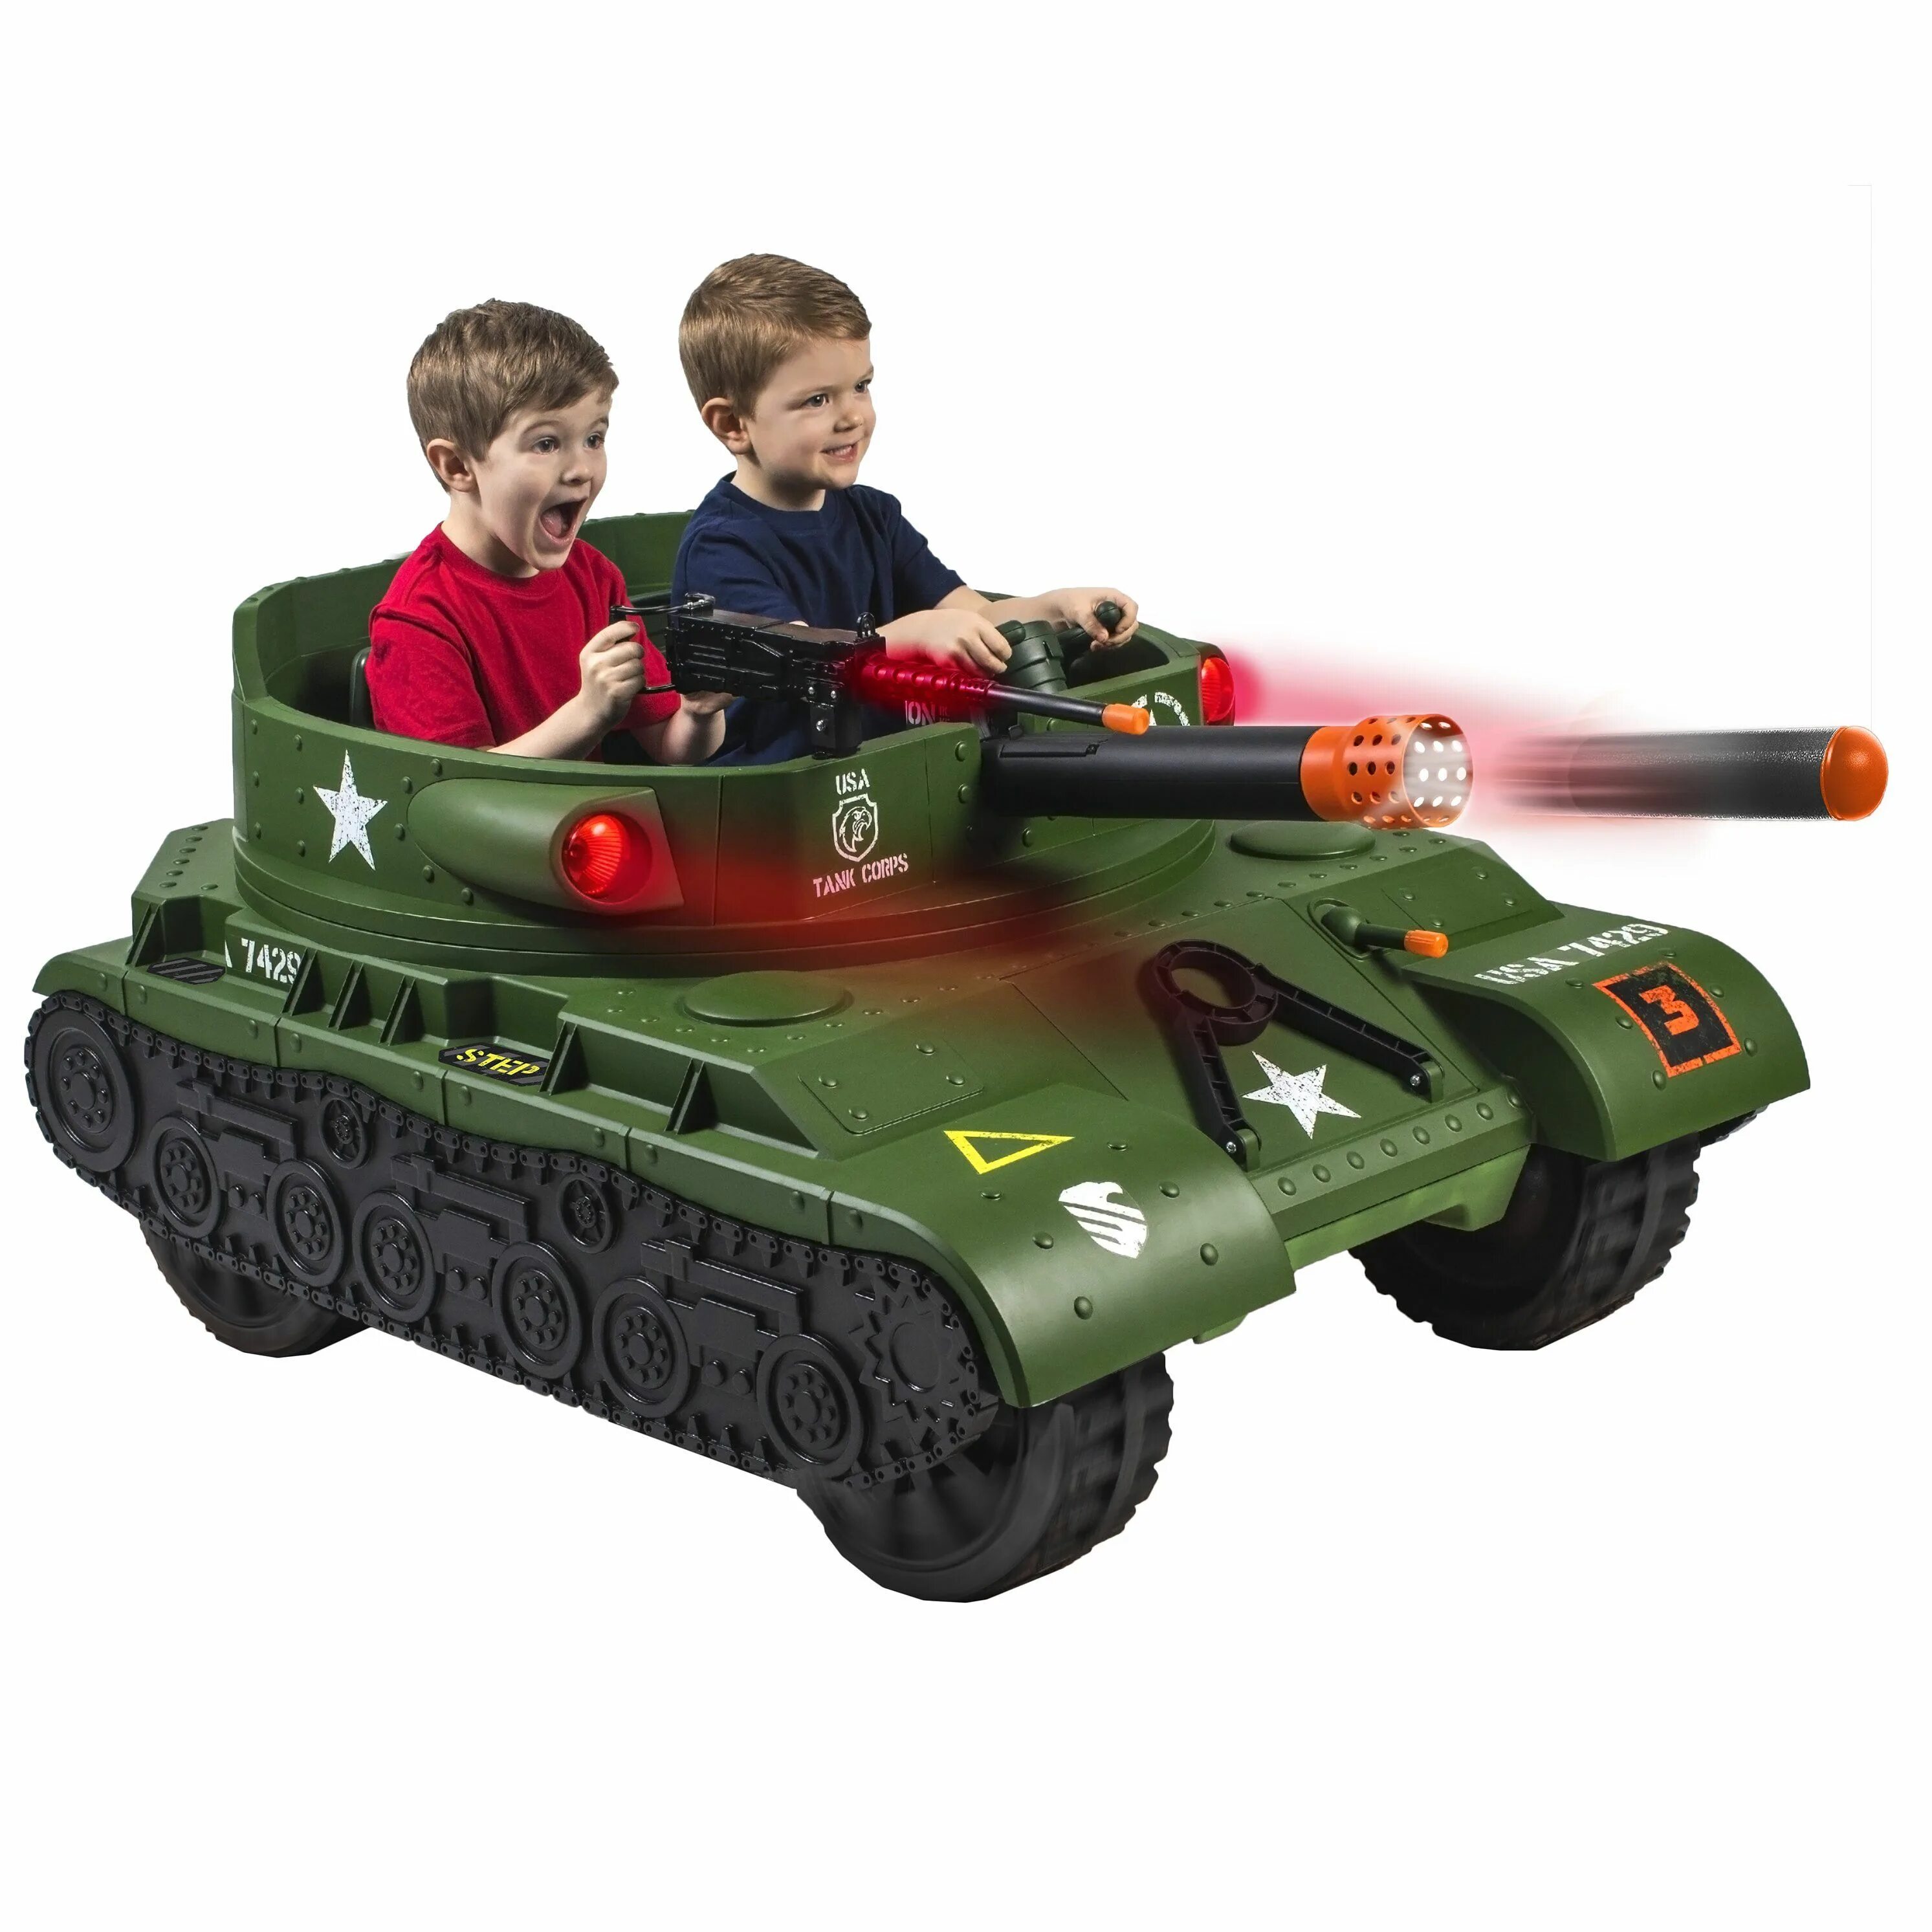 Детский электромобиль Тандер танк. Детский Громовой Электротанк. Игрушечный танк для детей. Игрушки для мальчиков 6-7 лет.